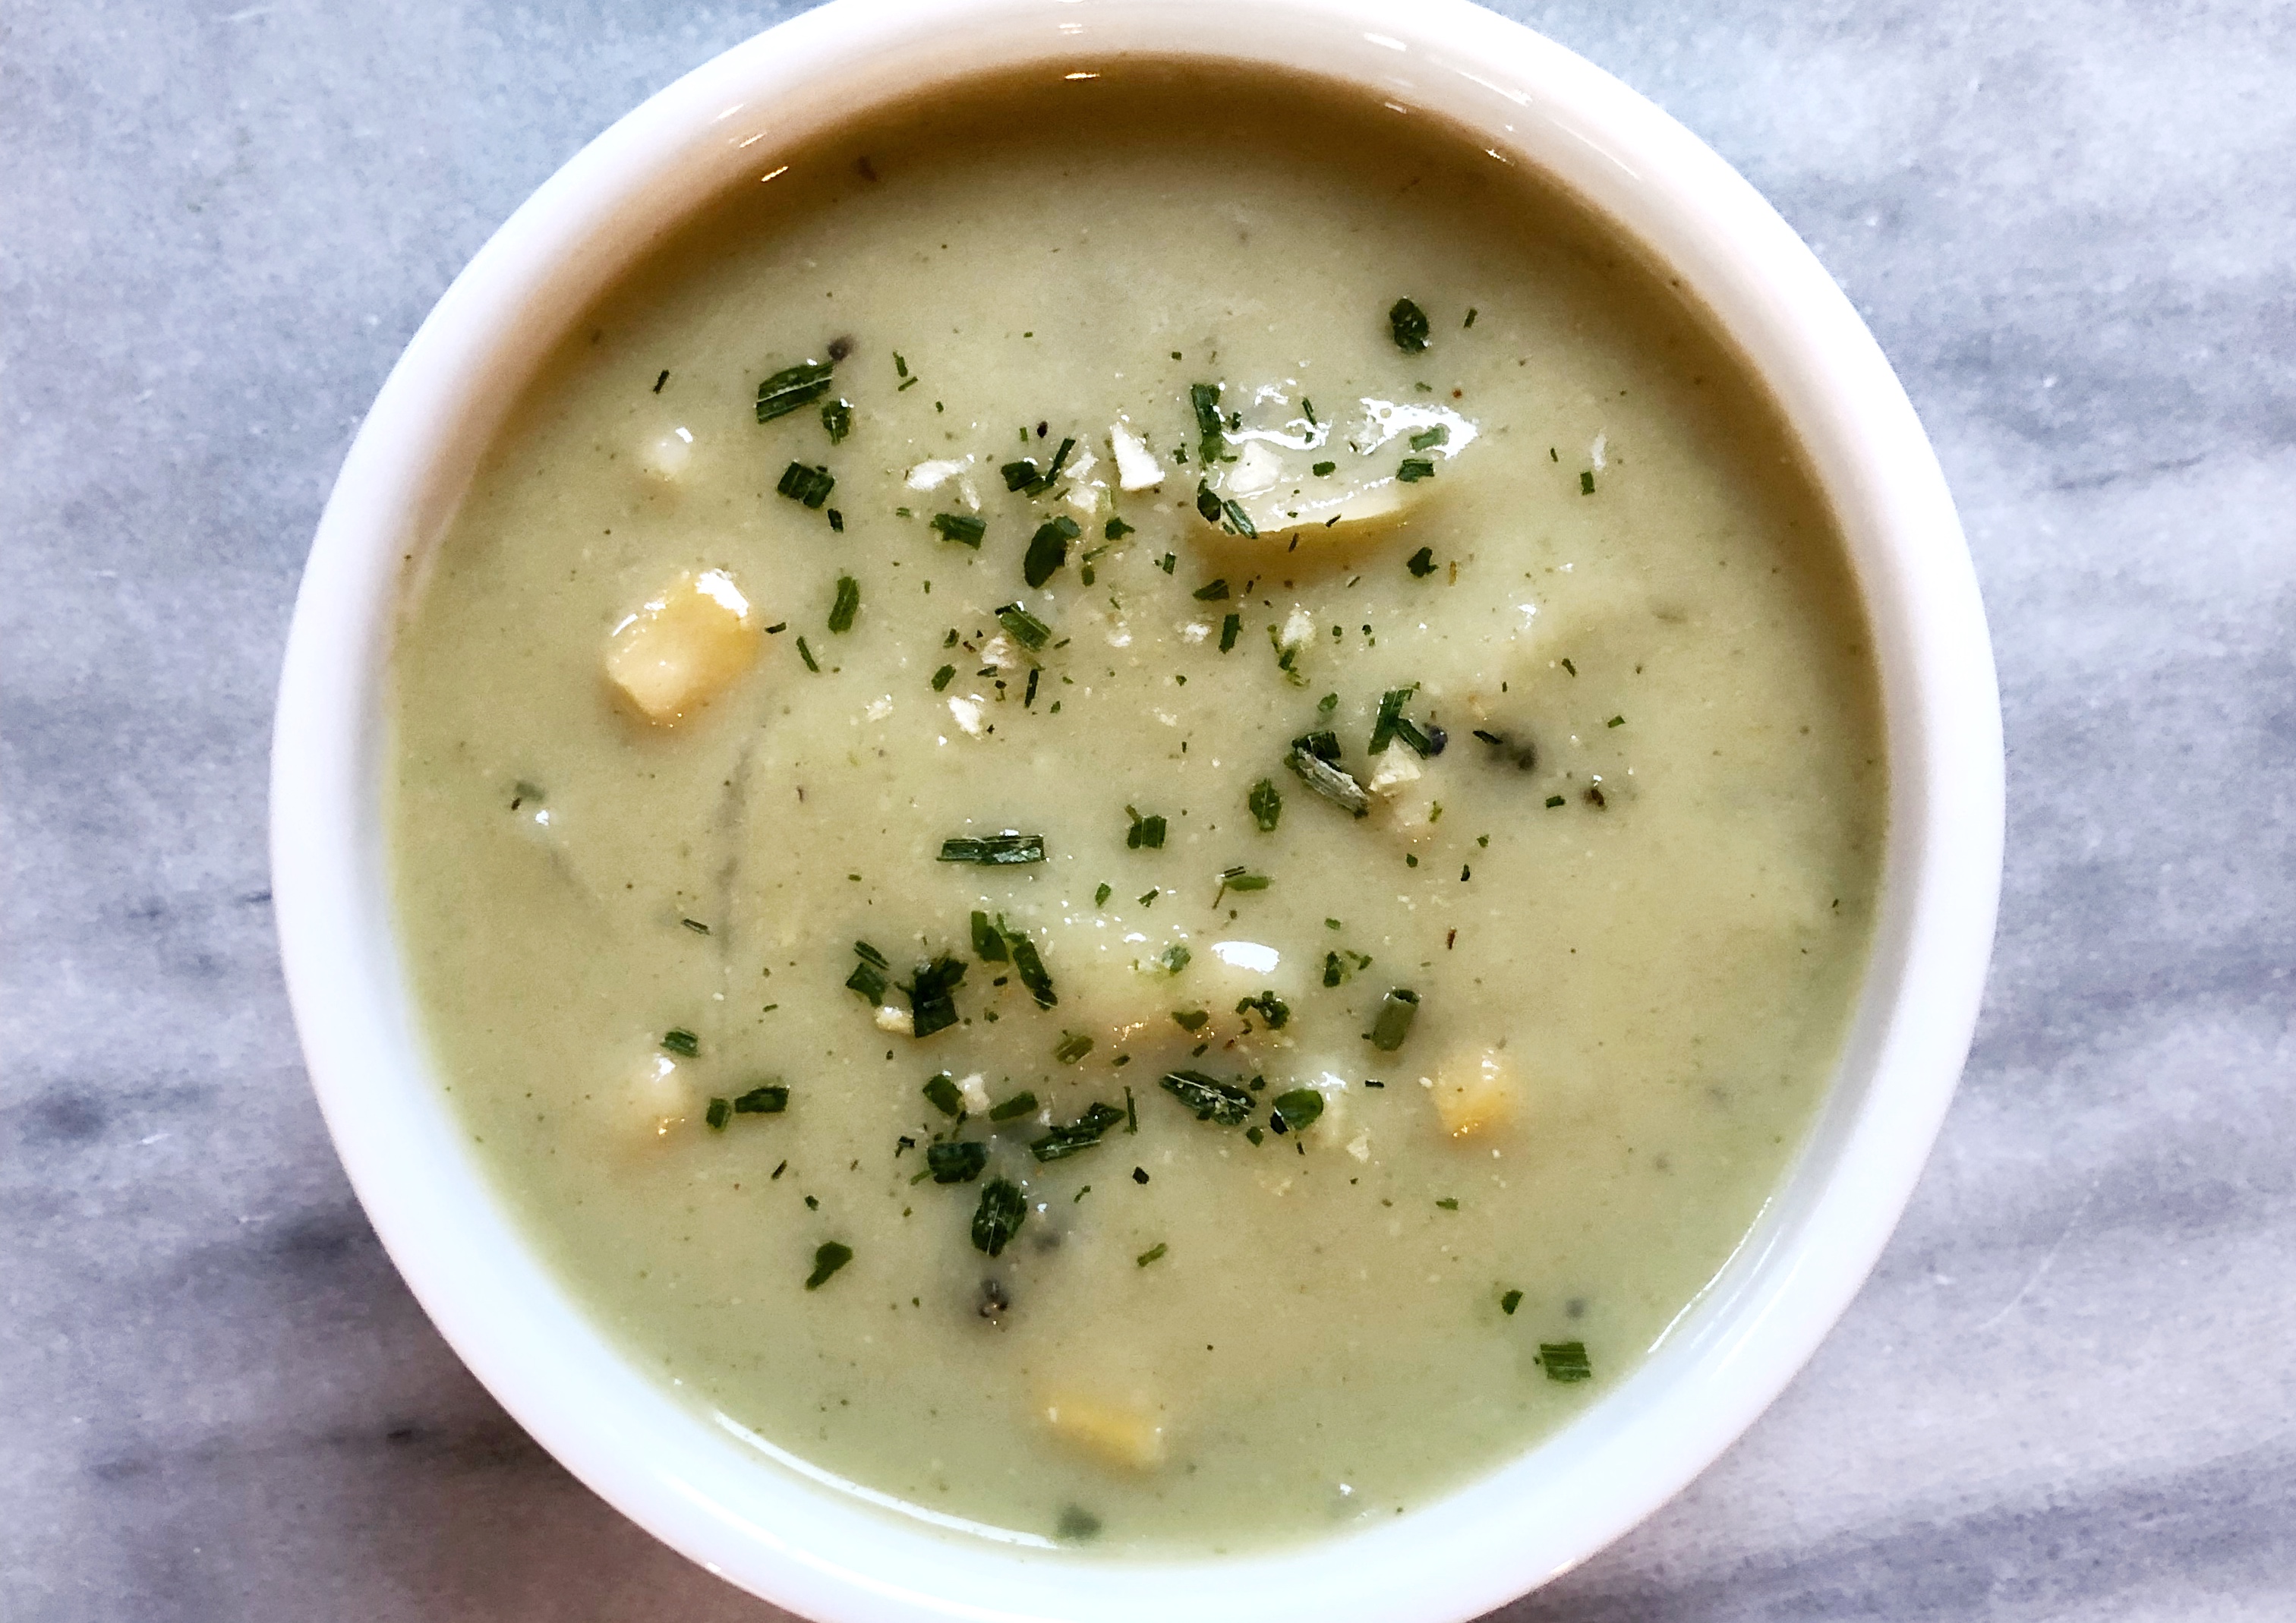 A heathy twist on corn chowder soup